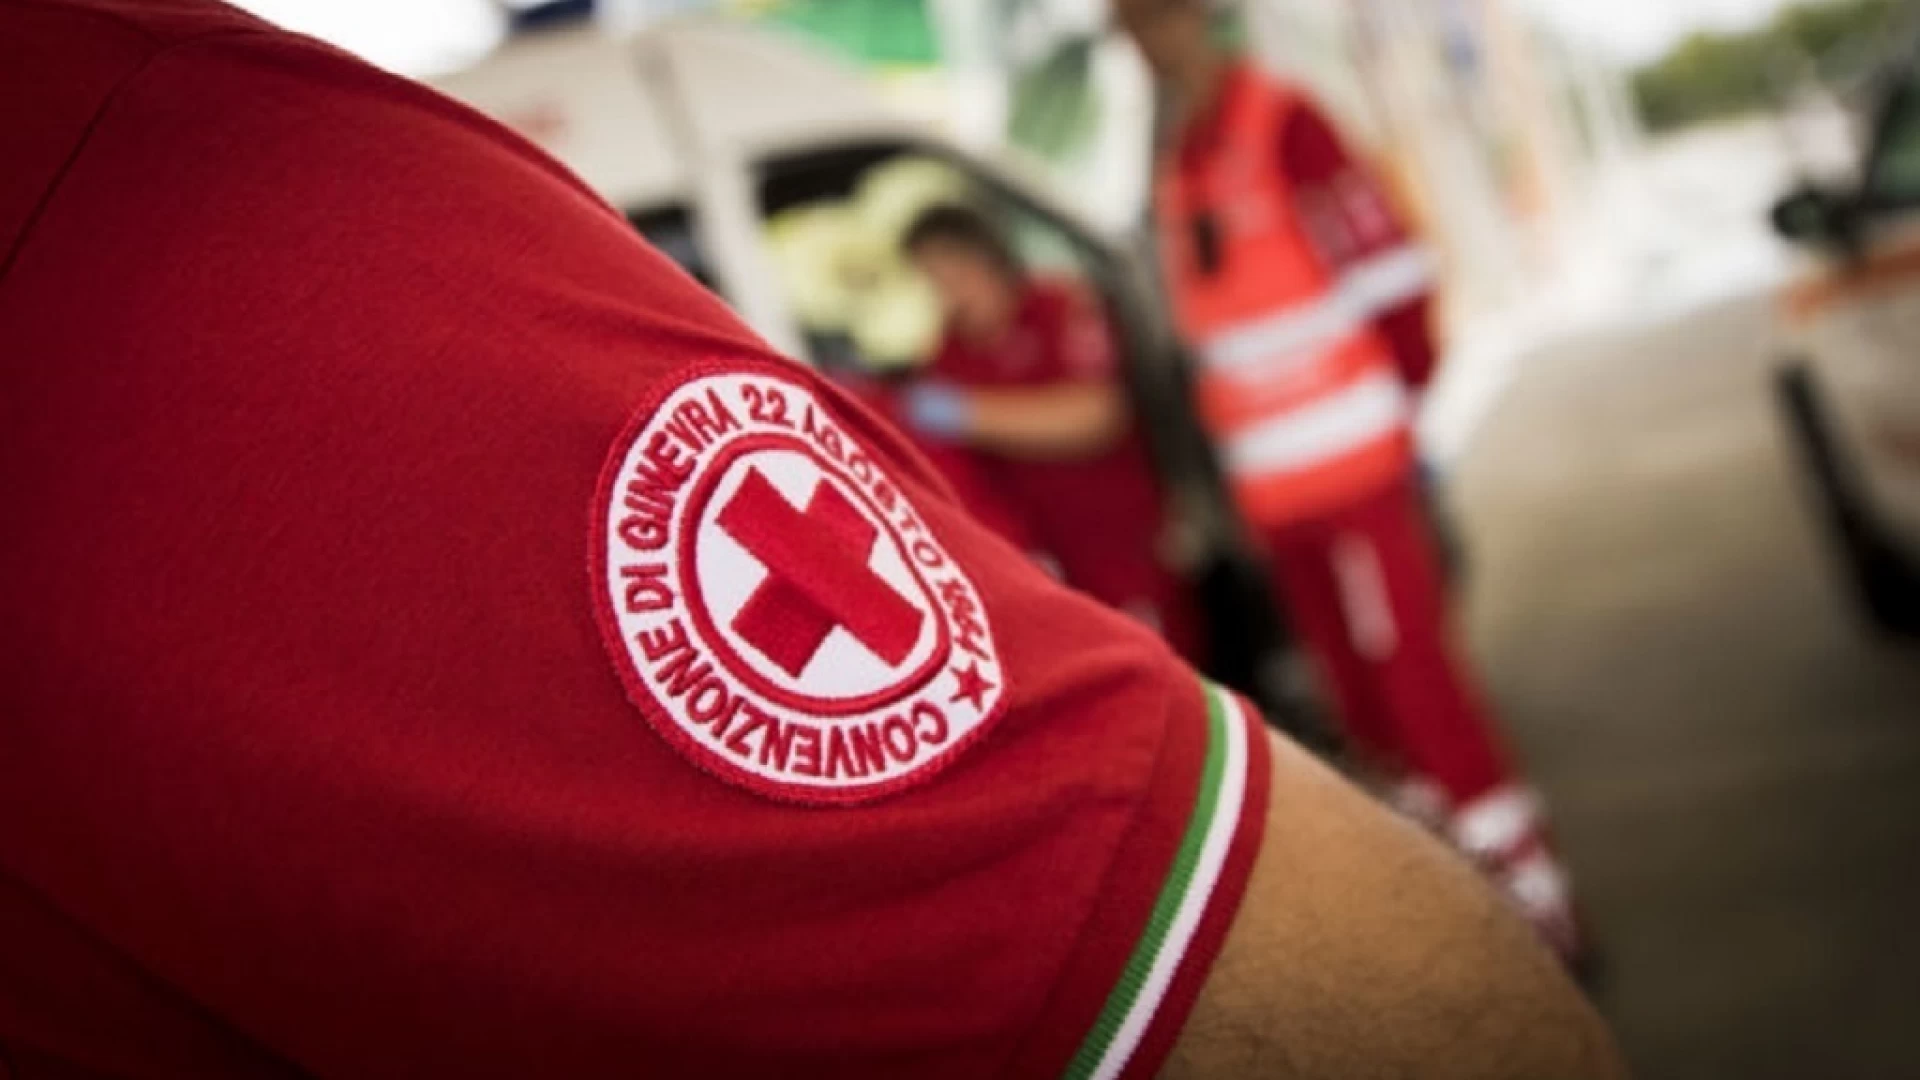 Colli a Volturno: sabato 29 agosto testo sierologici a cura della Croce Rossa Italiana. E' possibile prenotarsi